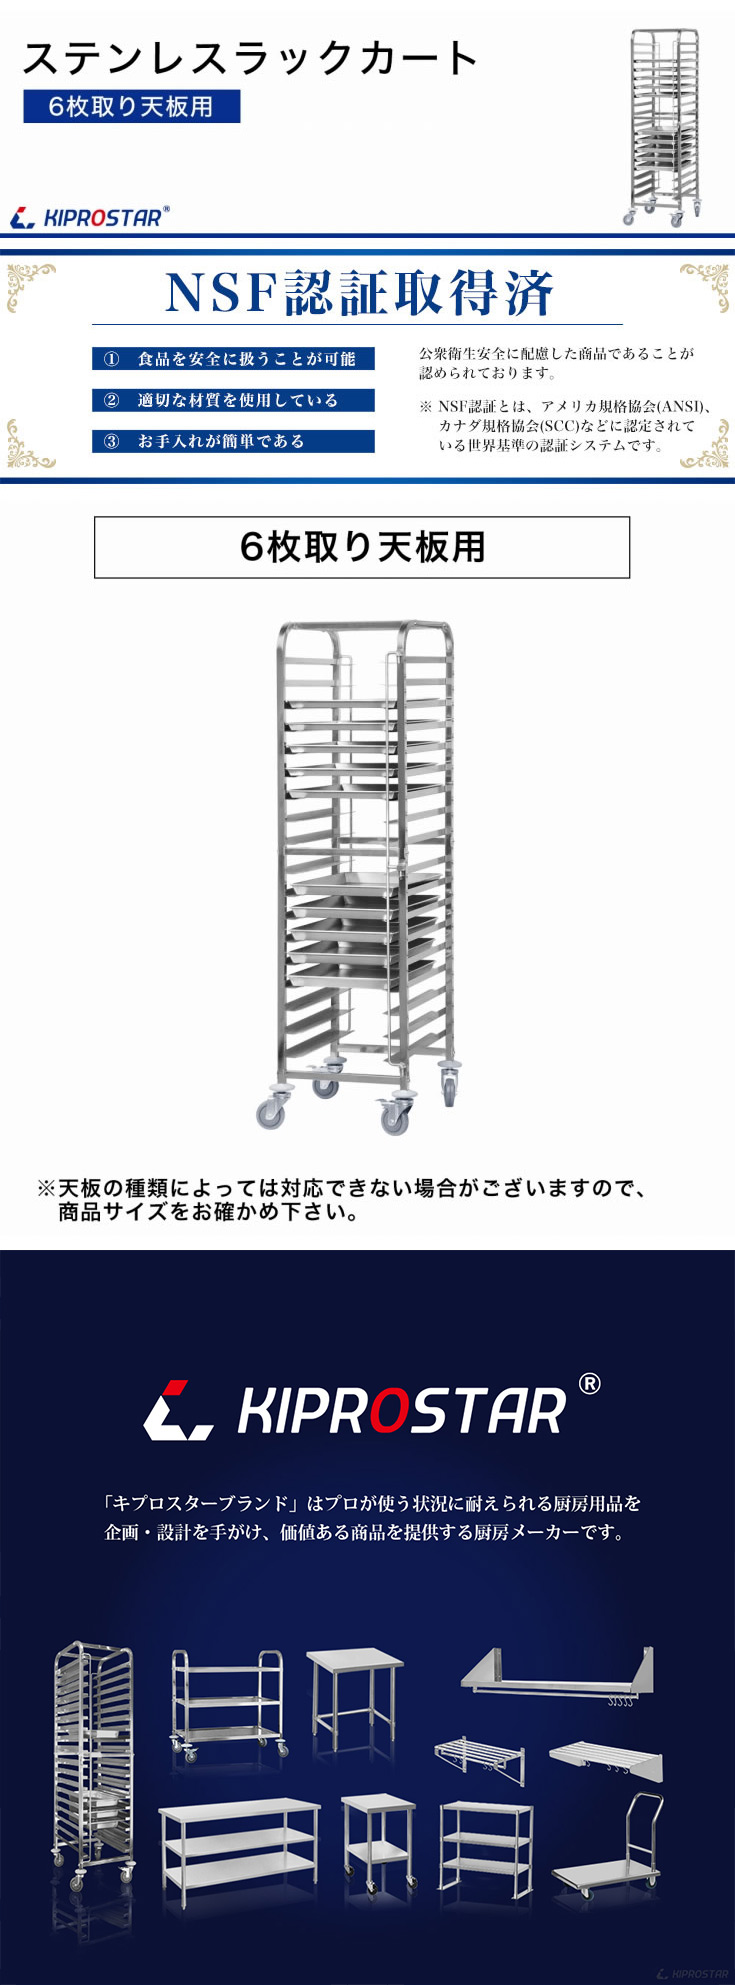 日本売りキズ有 天板ラックカート 18段 ステンレス 業務用 KIPROSTAR PRO-DR 6枚取り天板用 ベーカリーラック その他